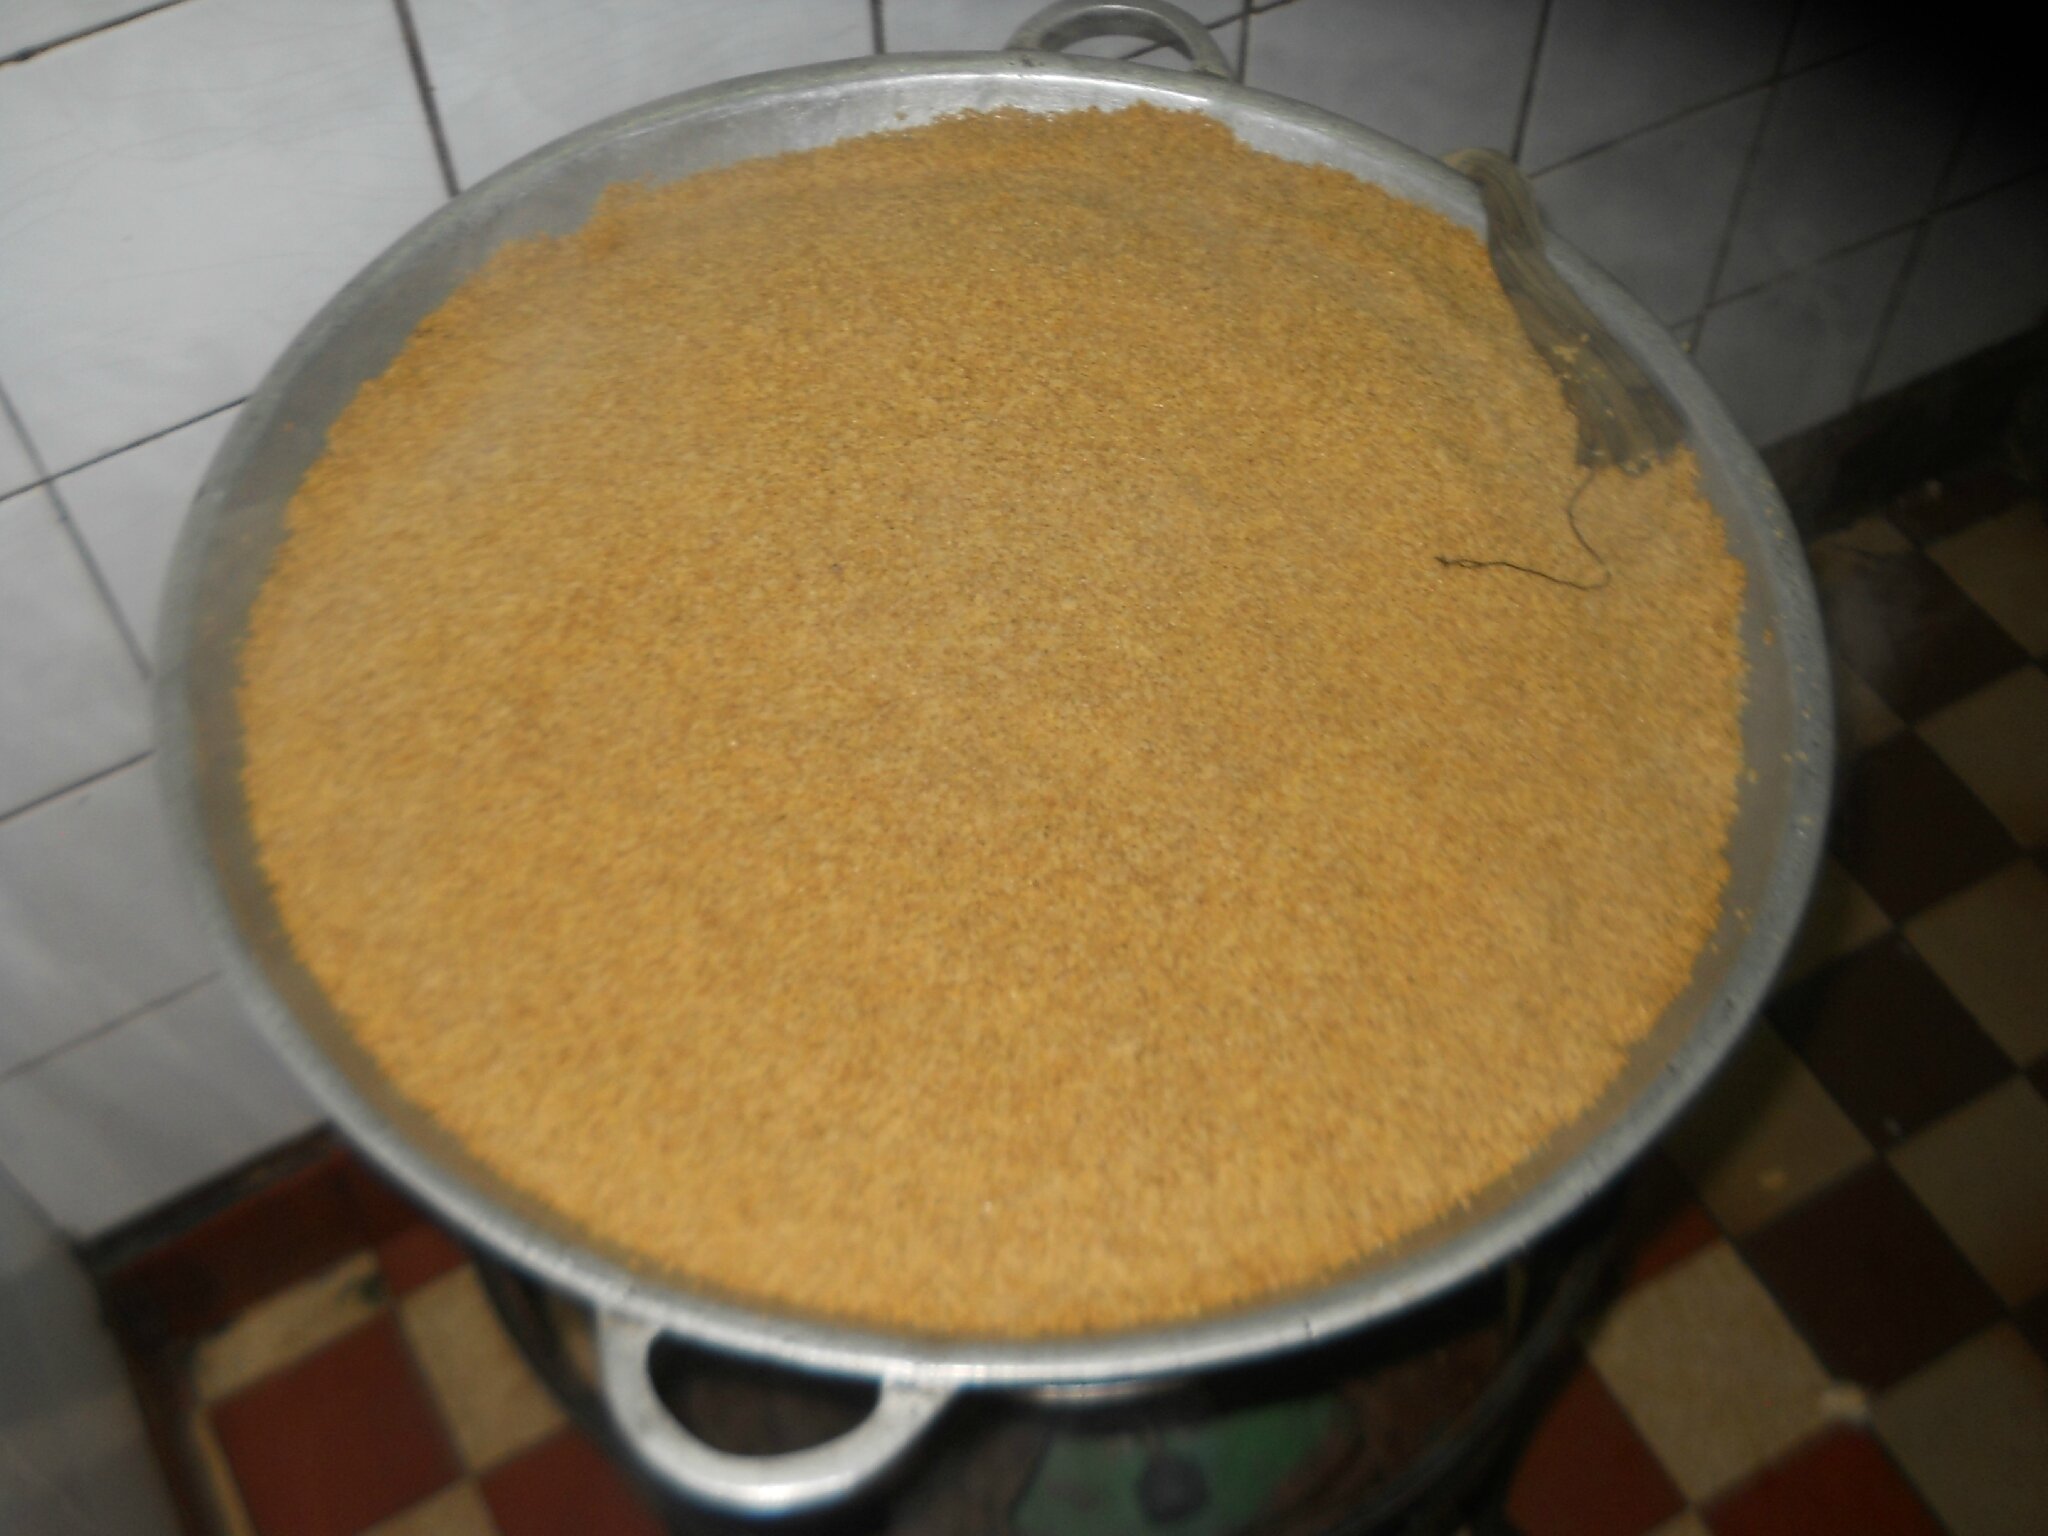 Thiéré Tamkharite (couscous de mil) / Couscous of millet 